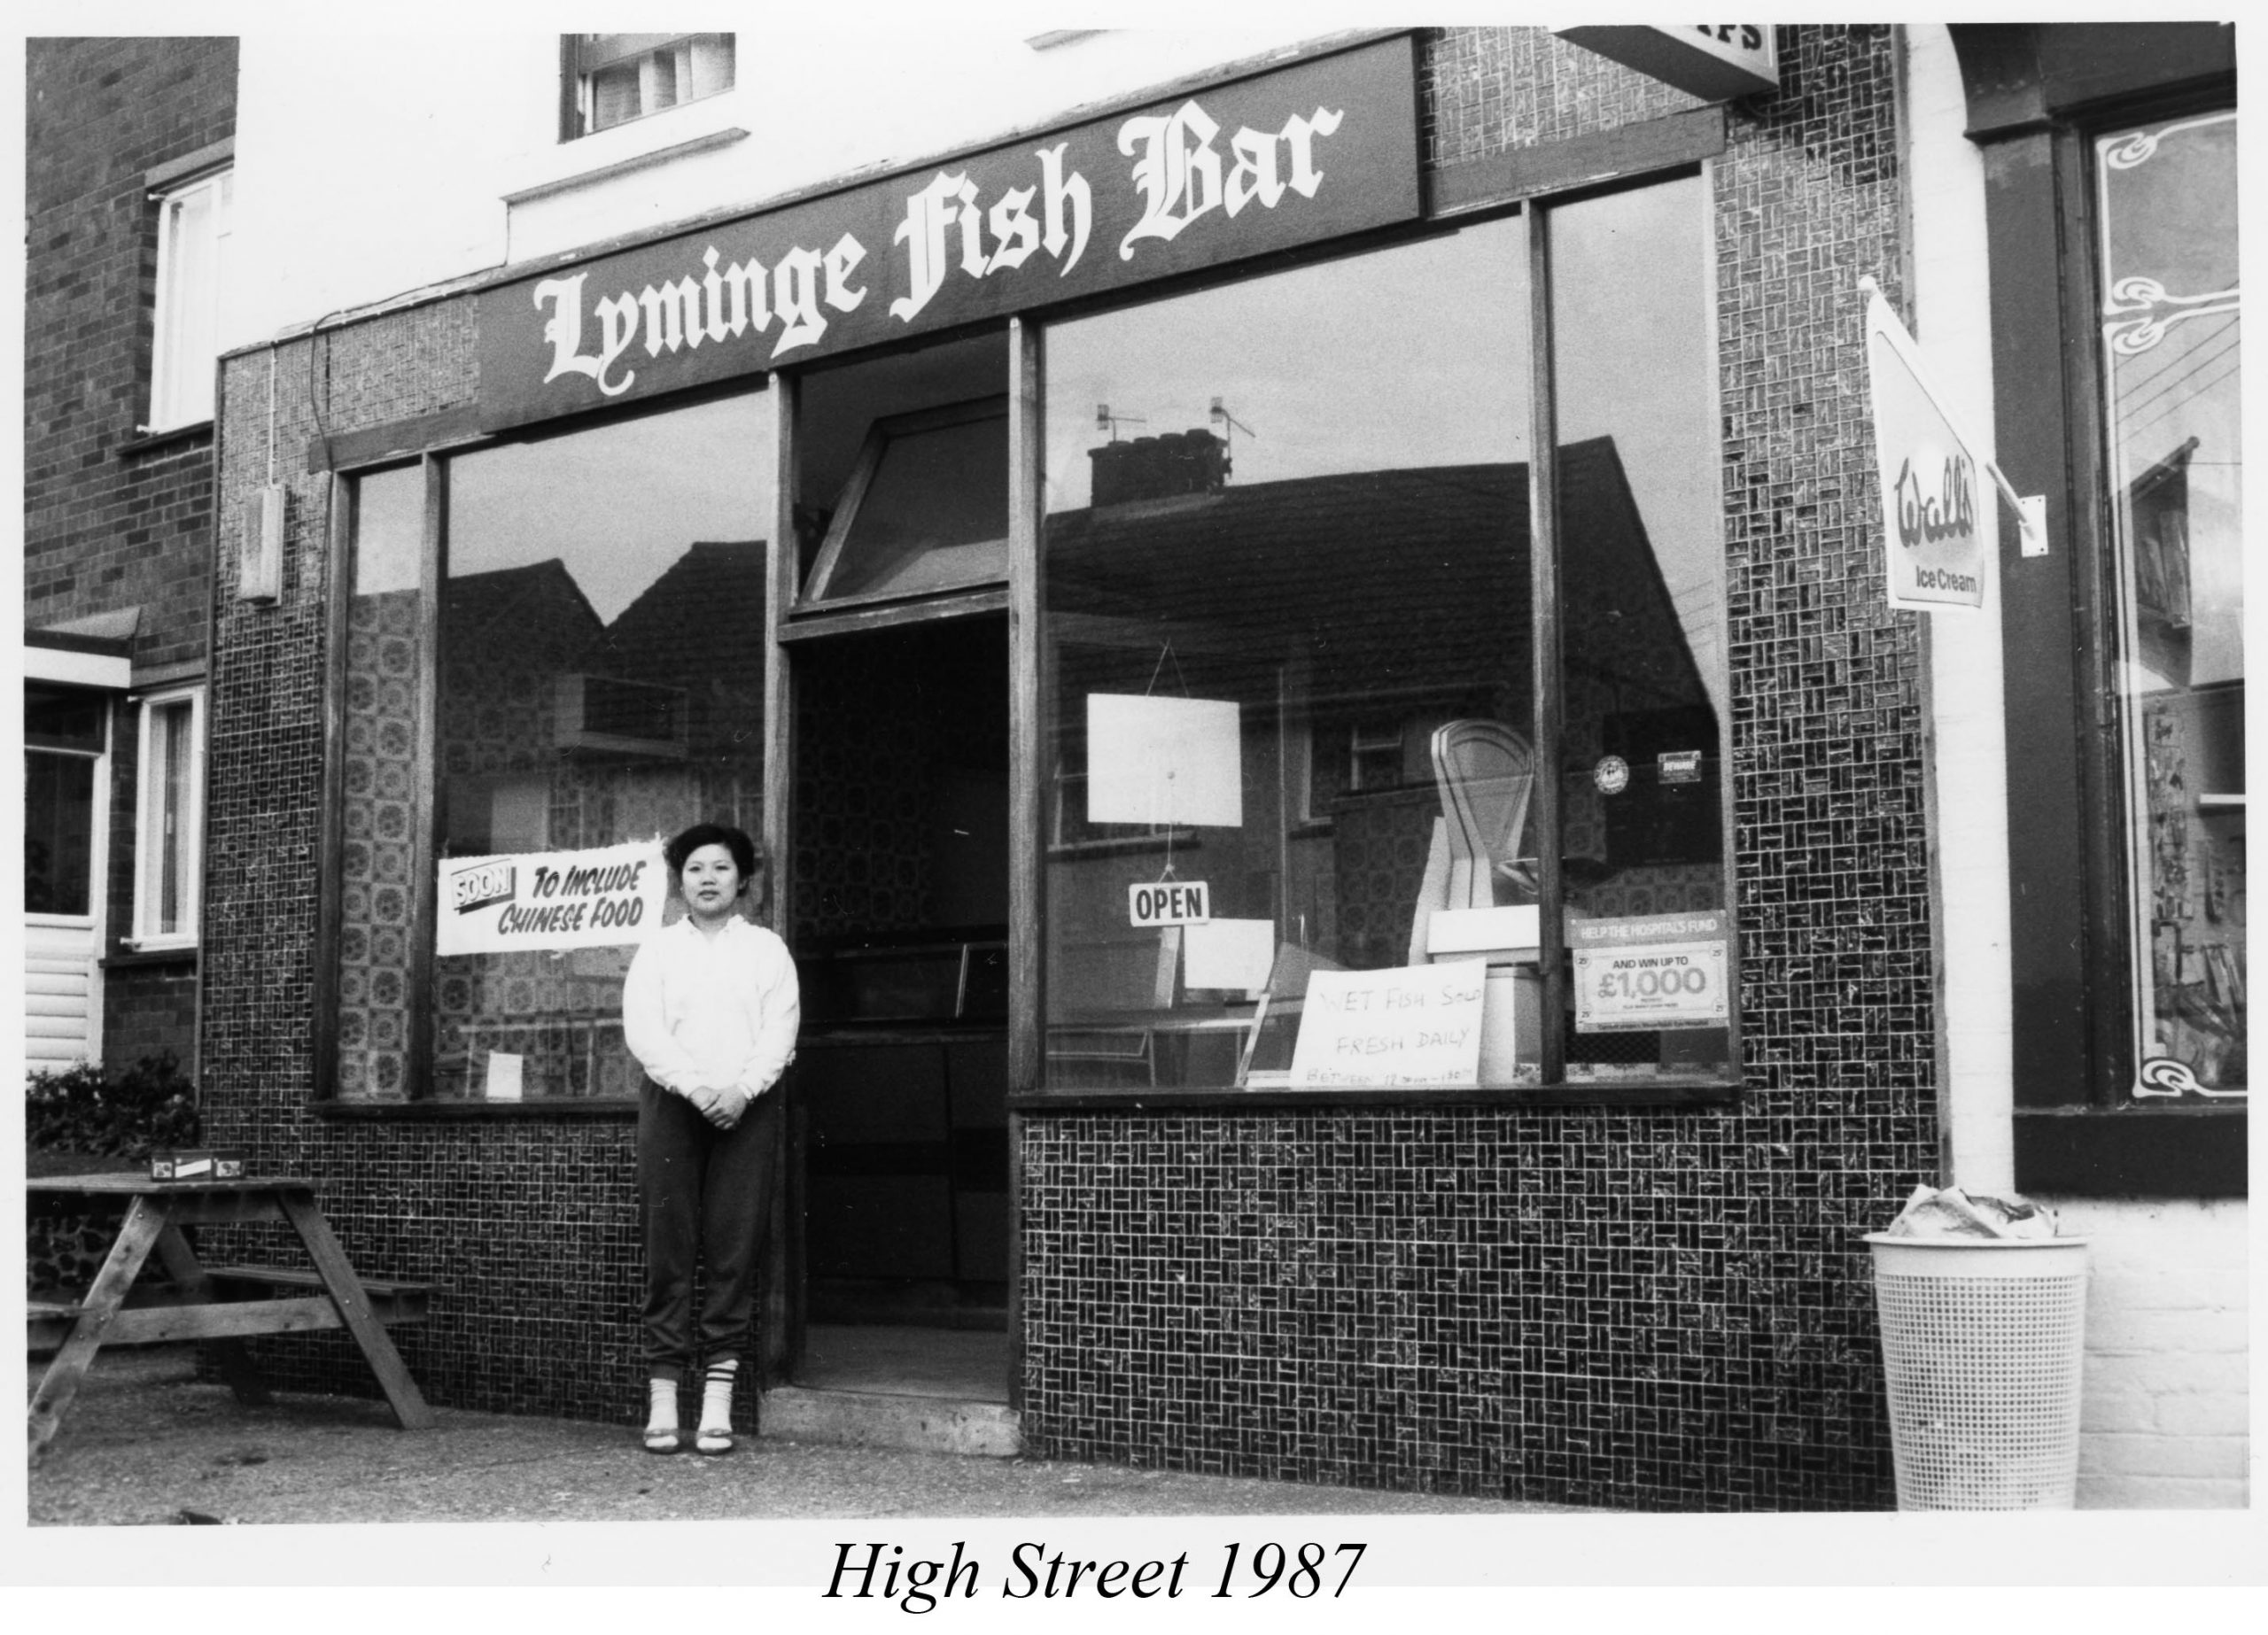 Lyminge Fish Bar, 1987, High St